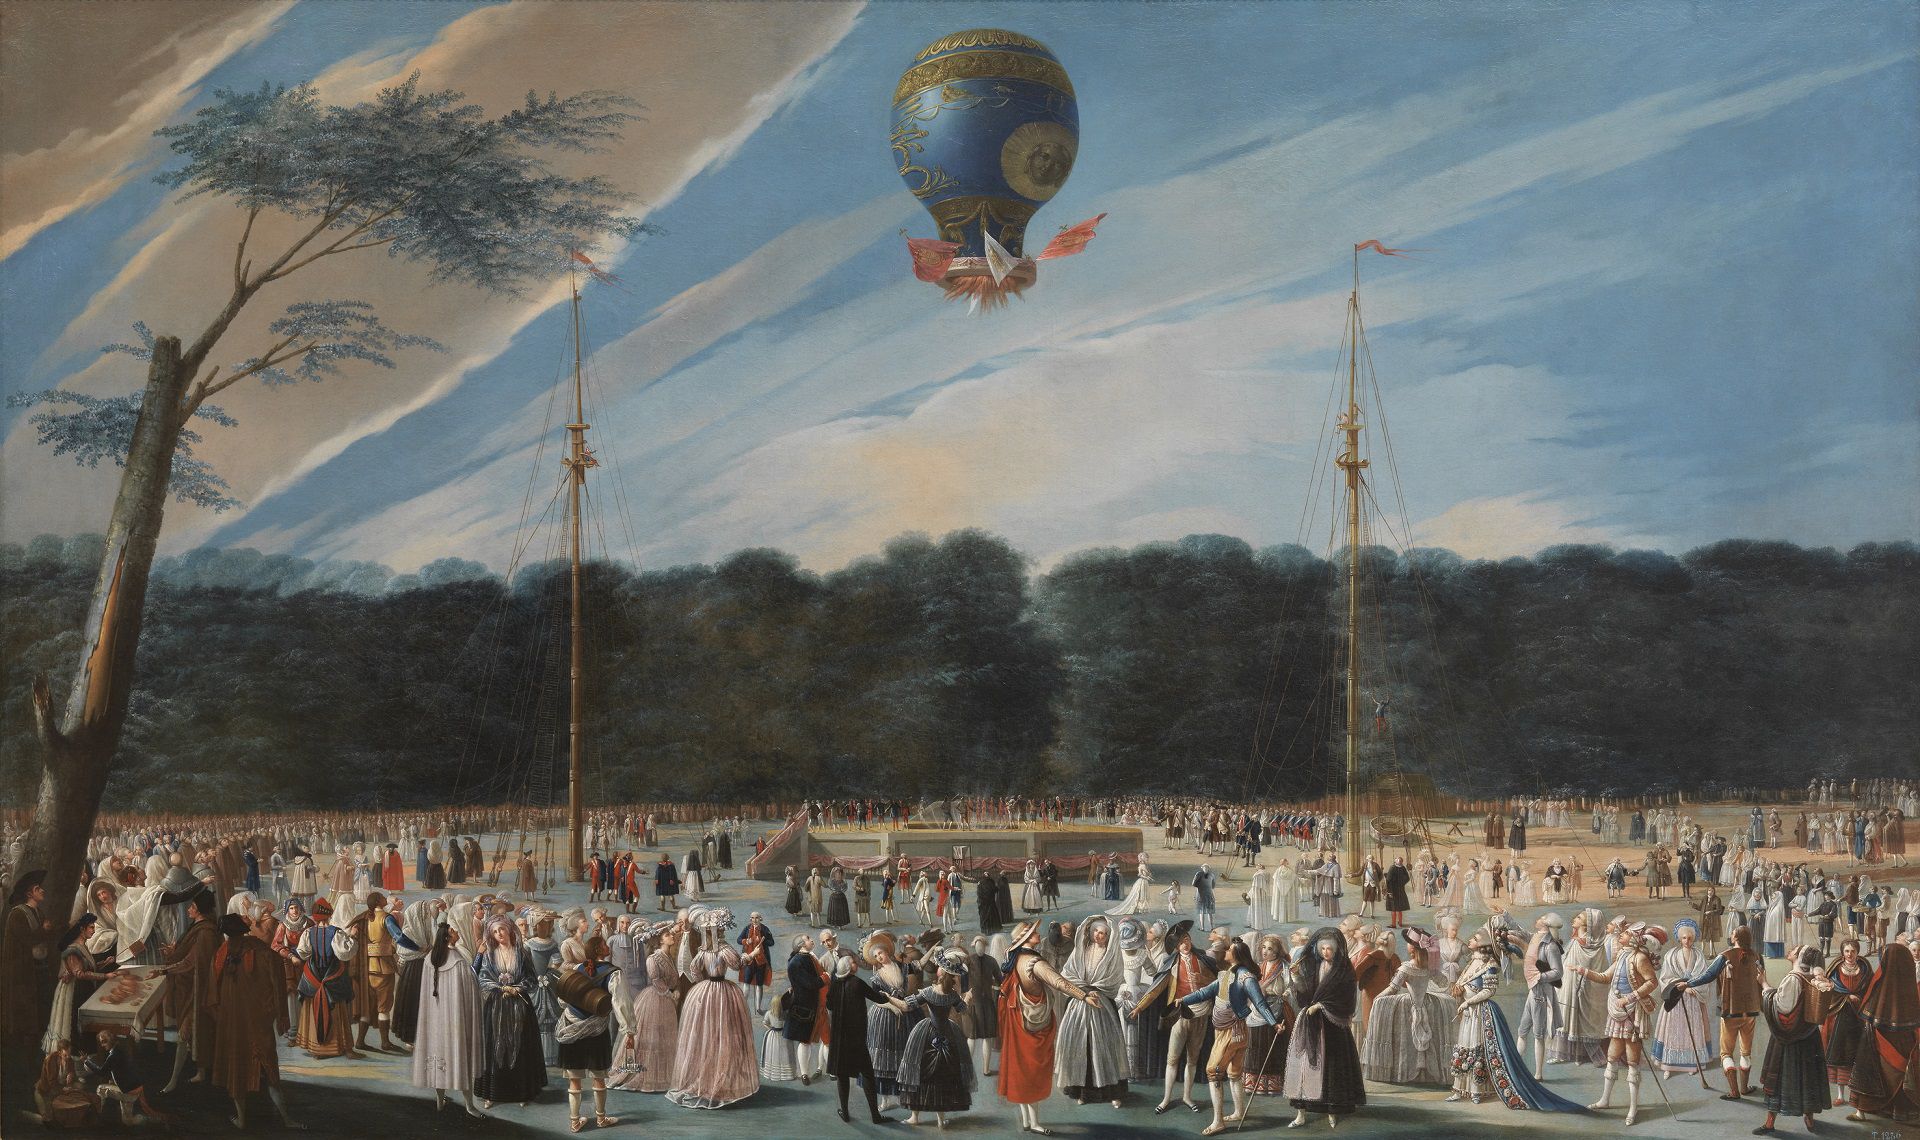 “Ascensión de un globo Montgolfier en Aranjuez” (1784) de Antonio Carnicero